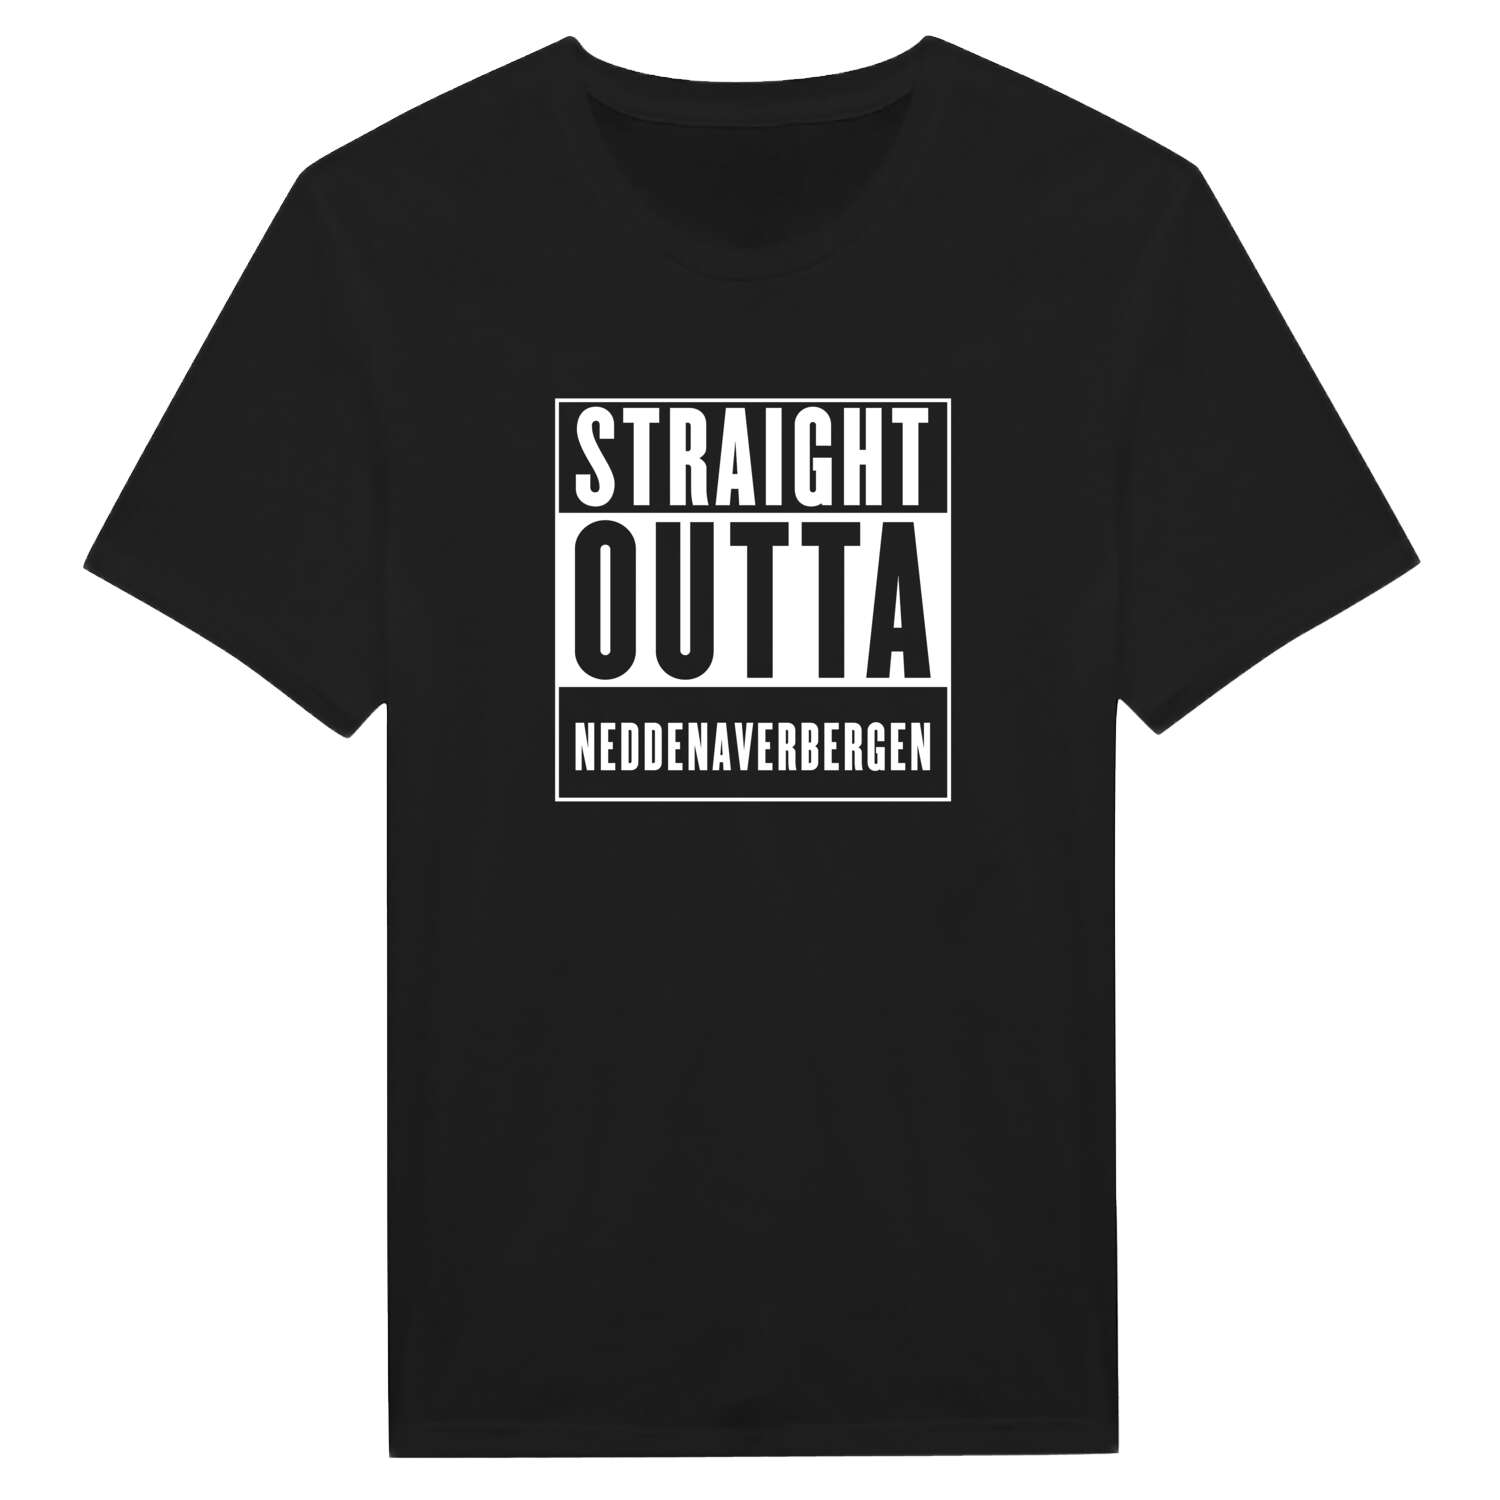 Neddenaverbergen T-Shirt »Straight Outta«